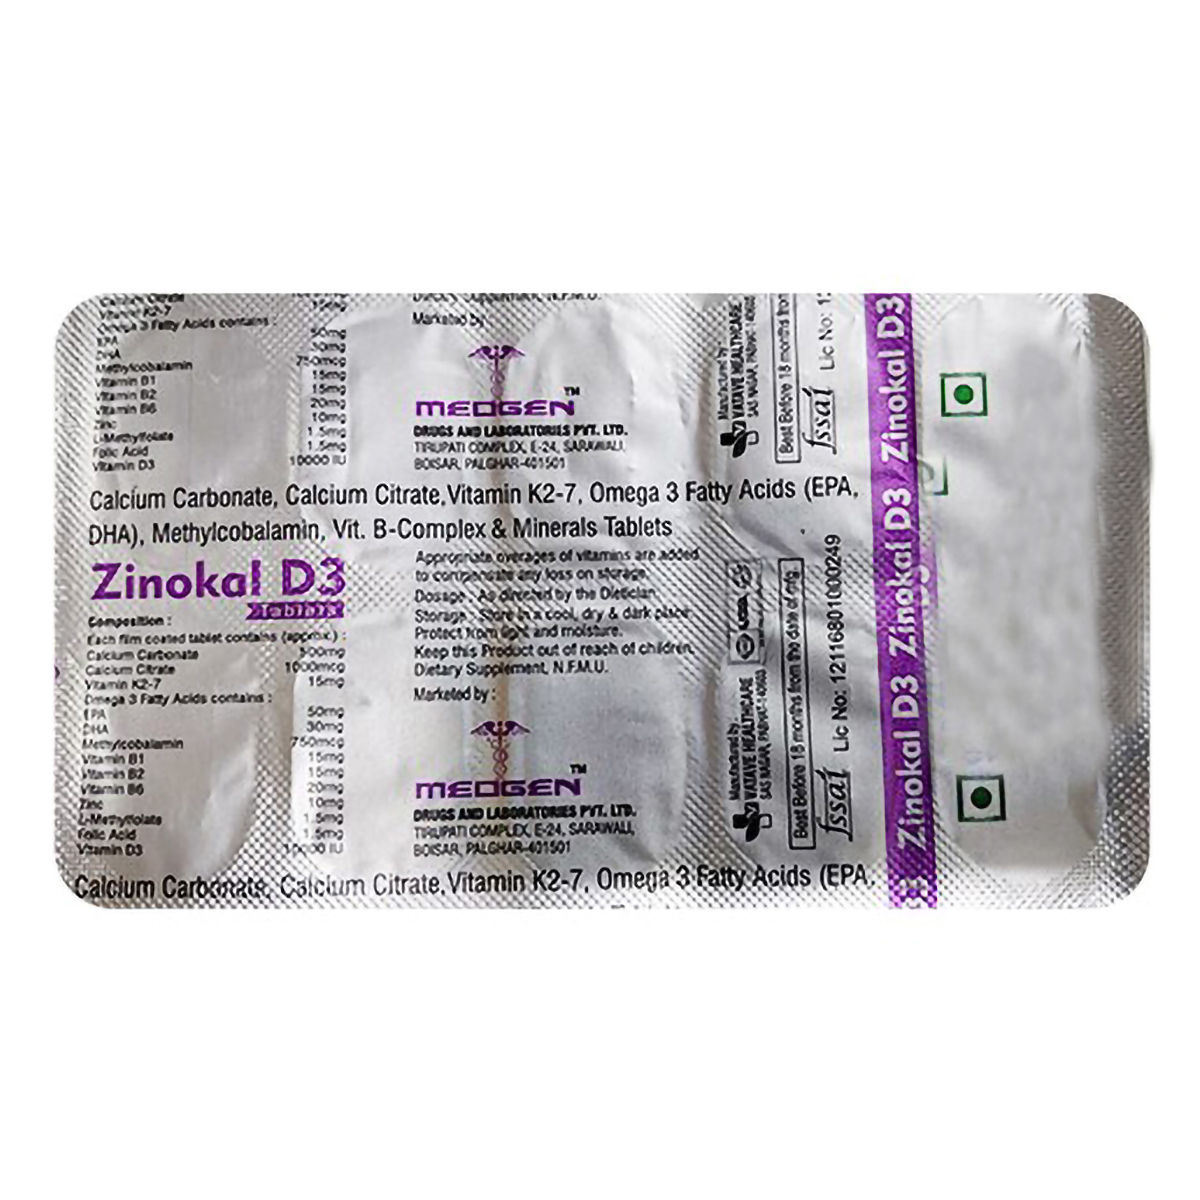 Buy Zinokal D3 Tablet 10's Online